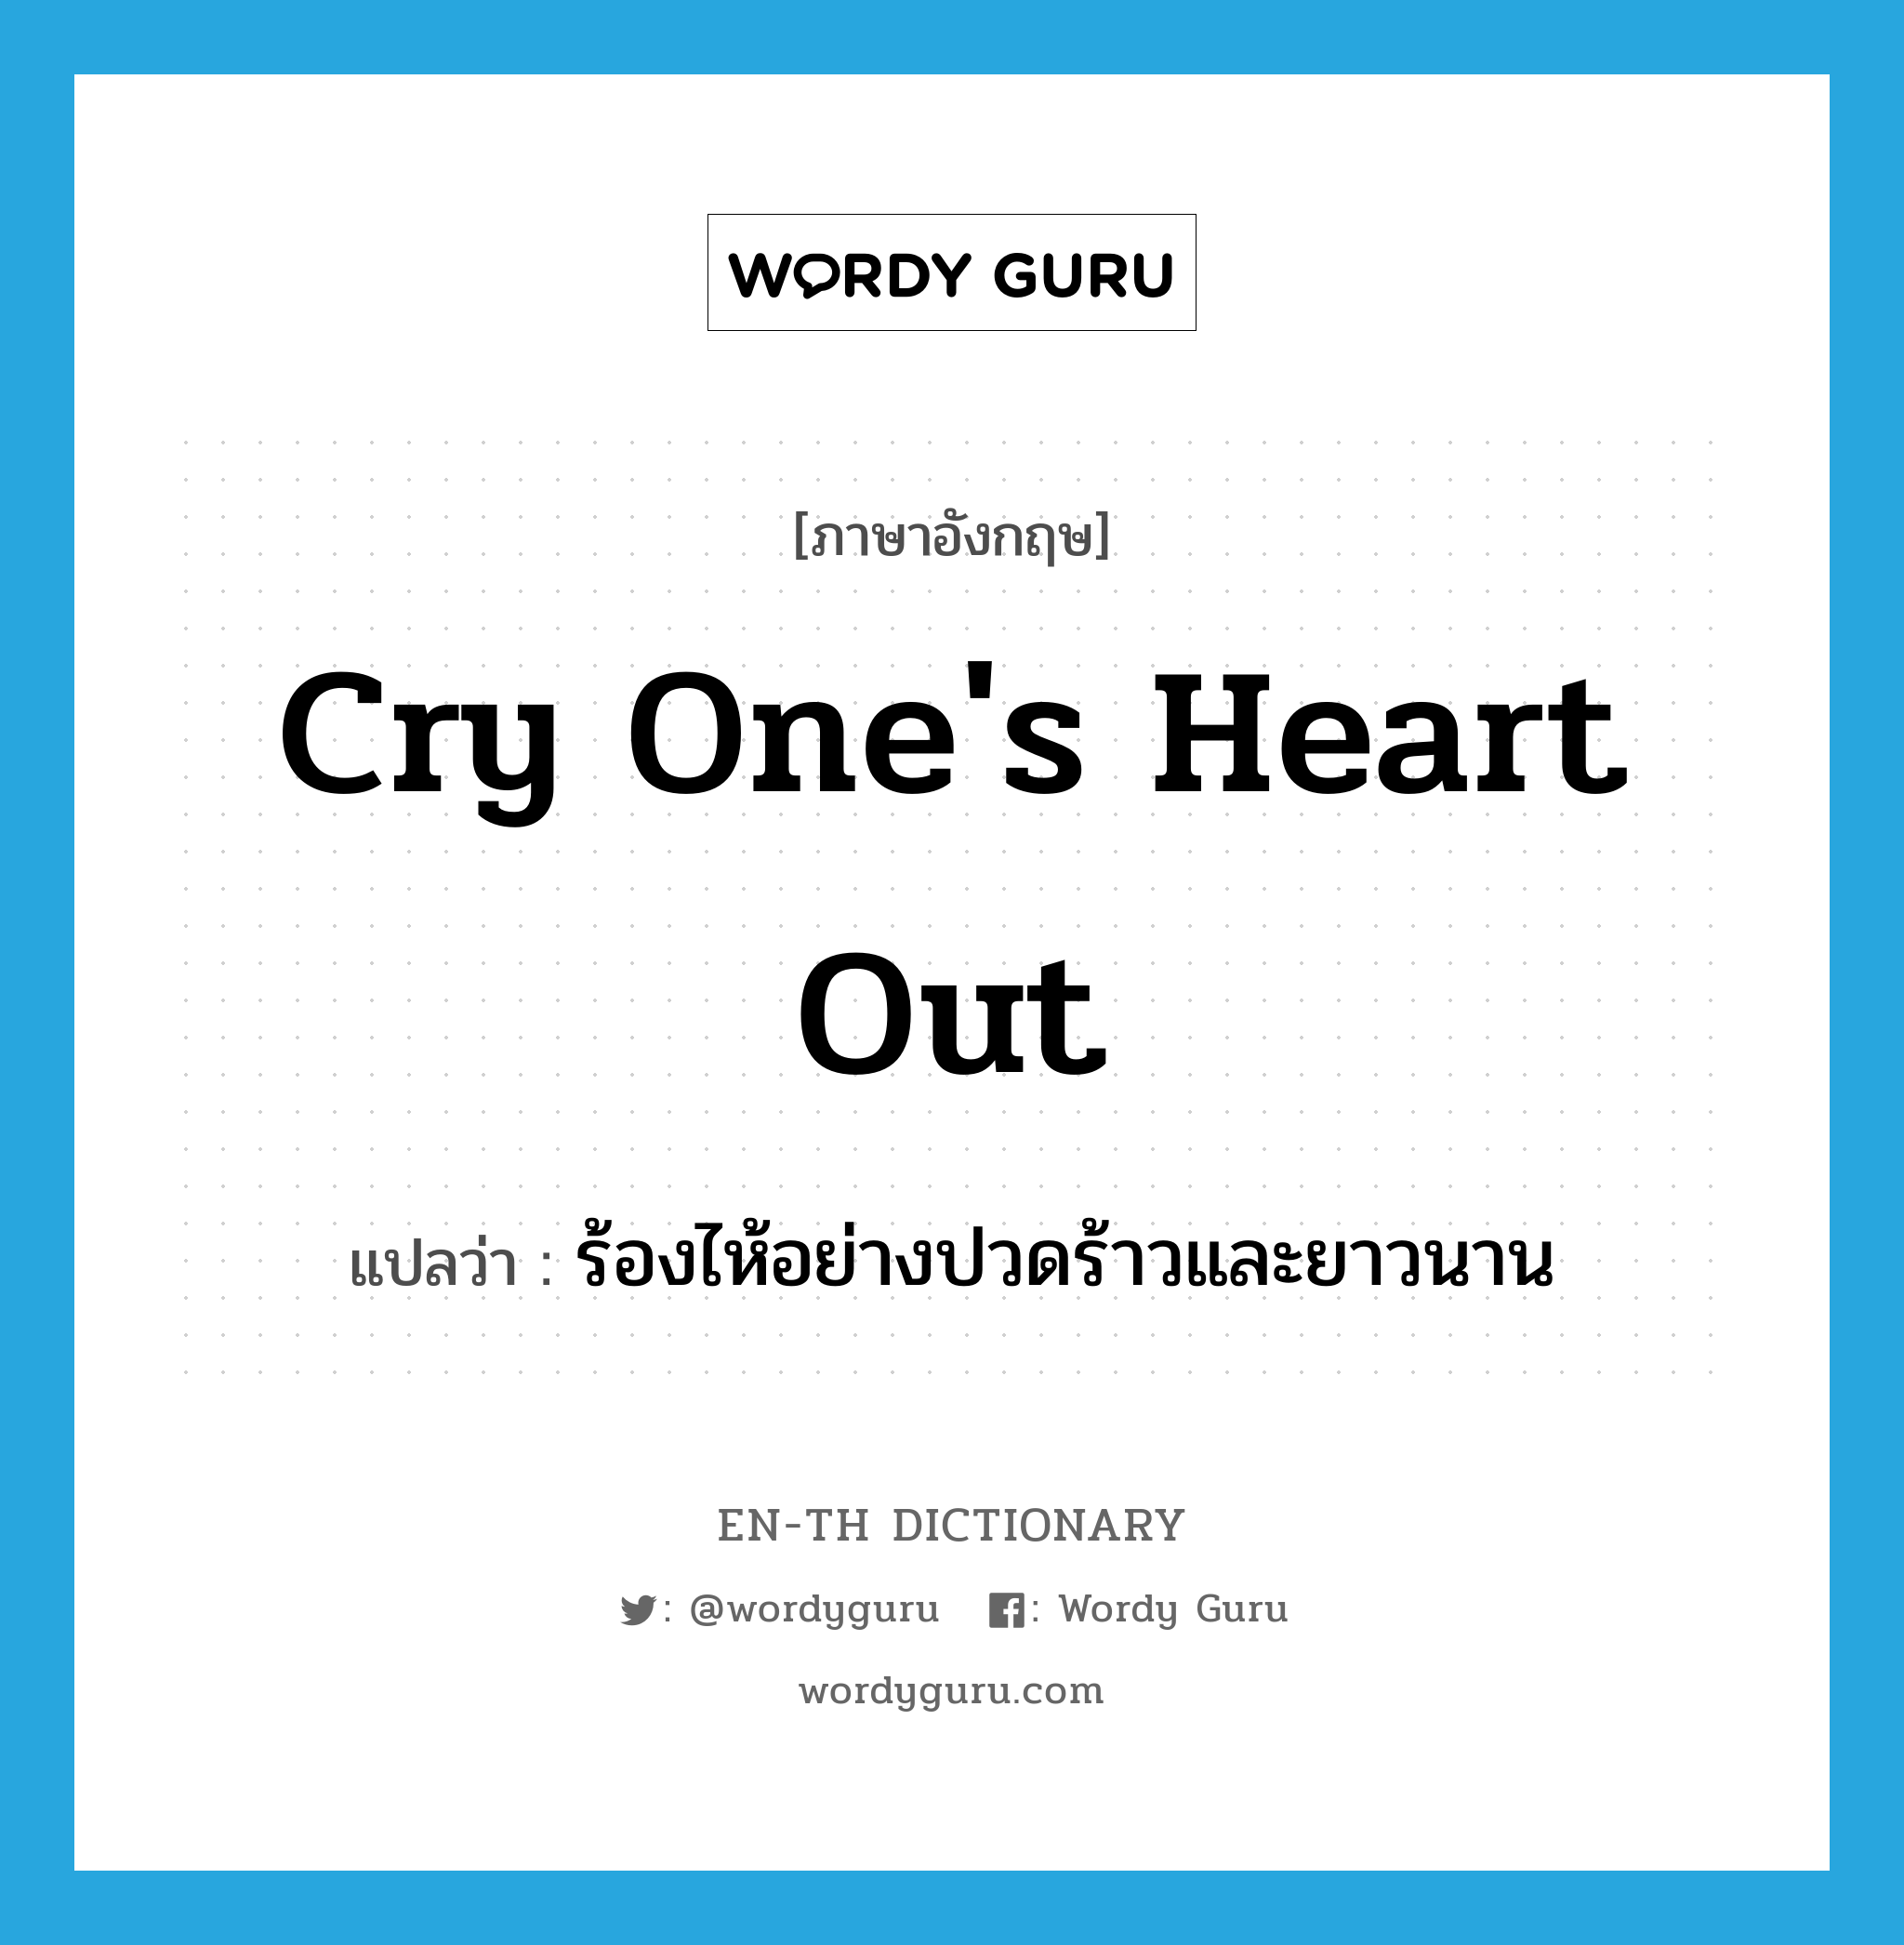 ร้องไห้อย่างปวดร้าวและยาวนาน ภาษาอังกฤษ?, คำศัพท์ภาษาอังกฤษ ร้องไห้อย่างปวดร้าวและยาวนาน แปลว่า cry one's heart out ประเภท IDM หมวด IDM